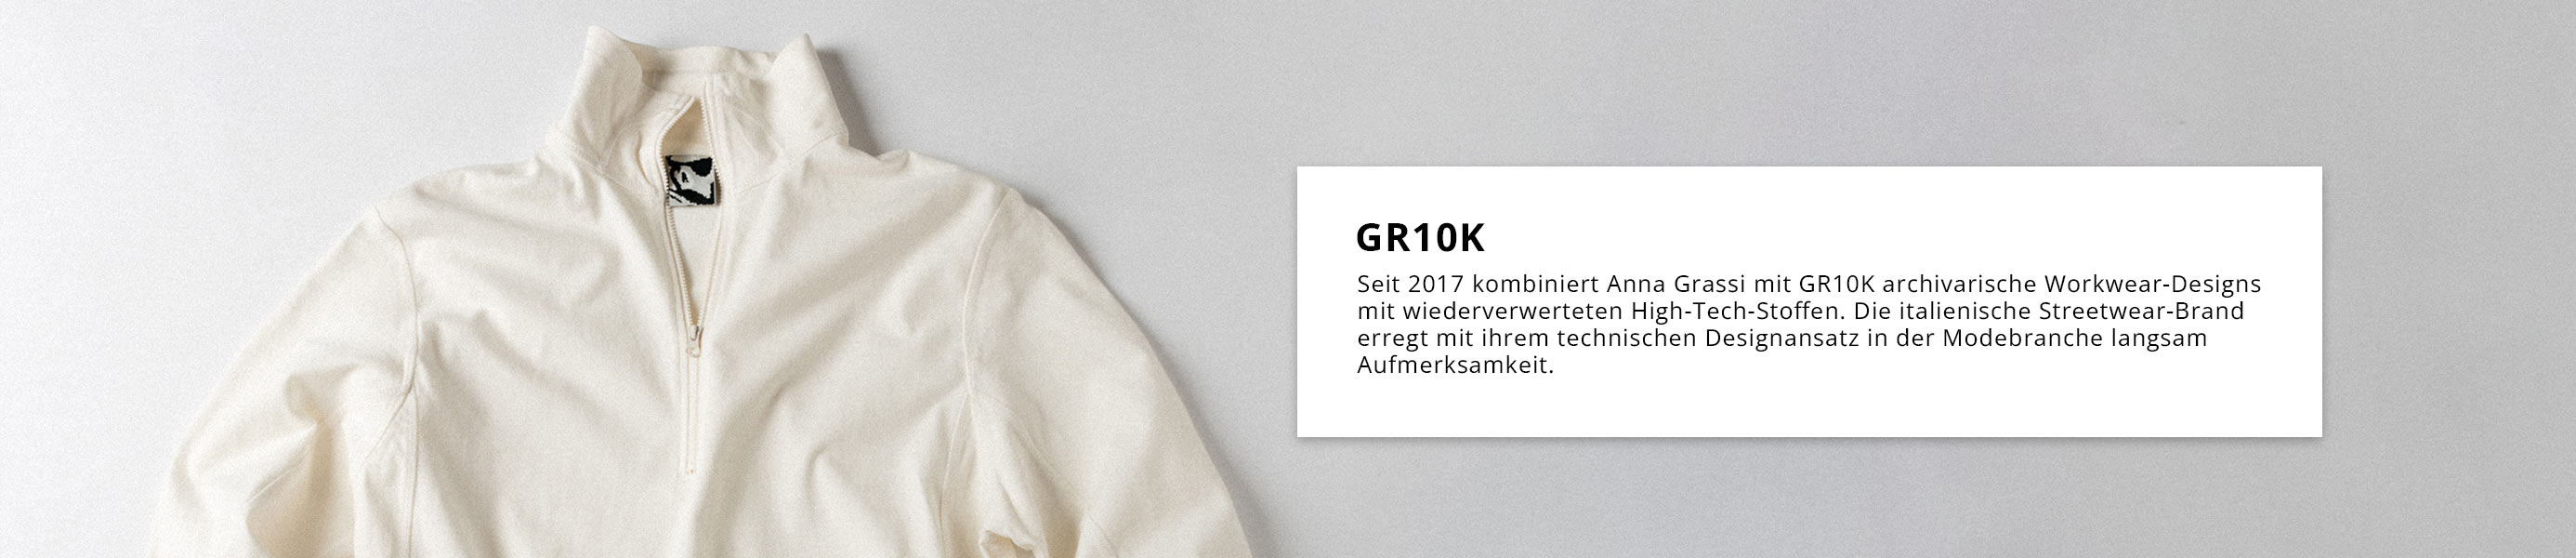 GR10K